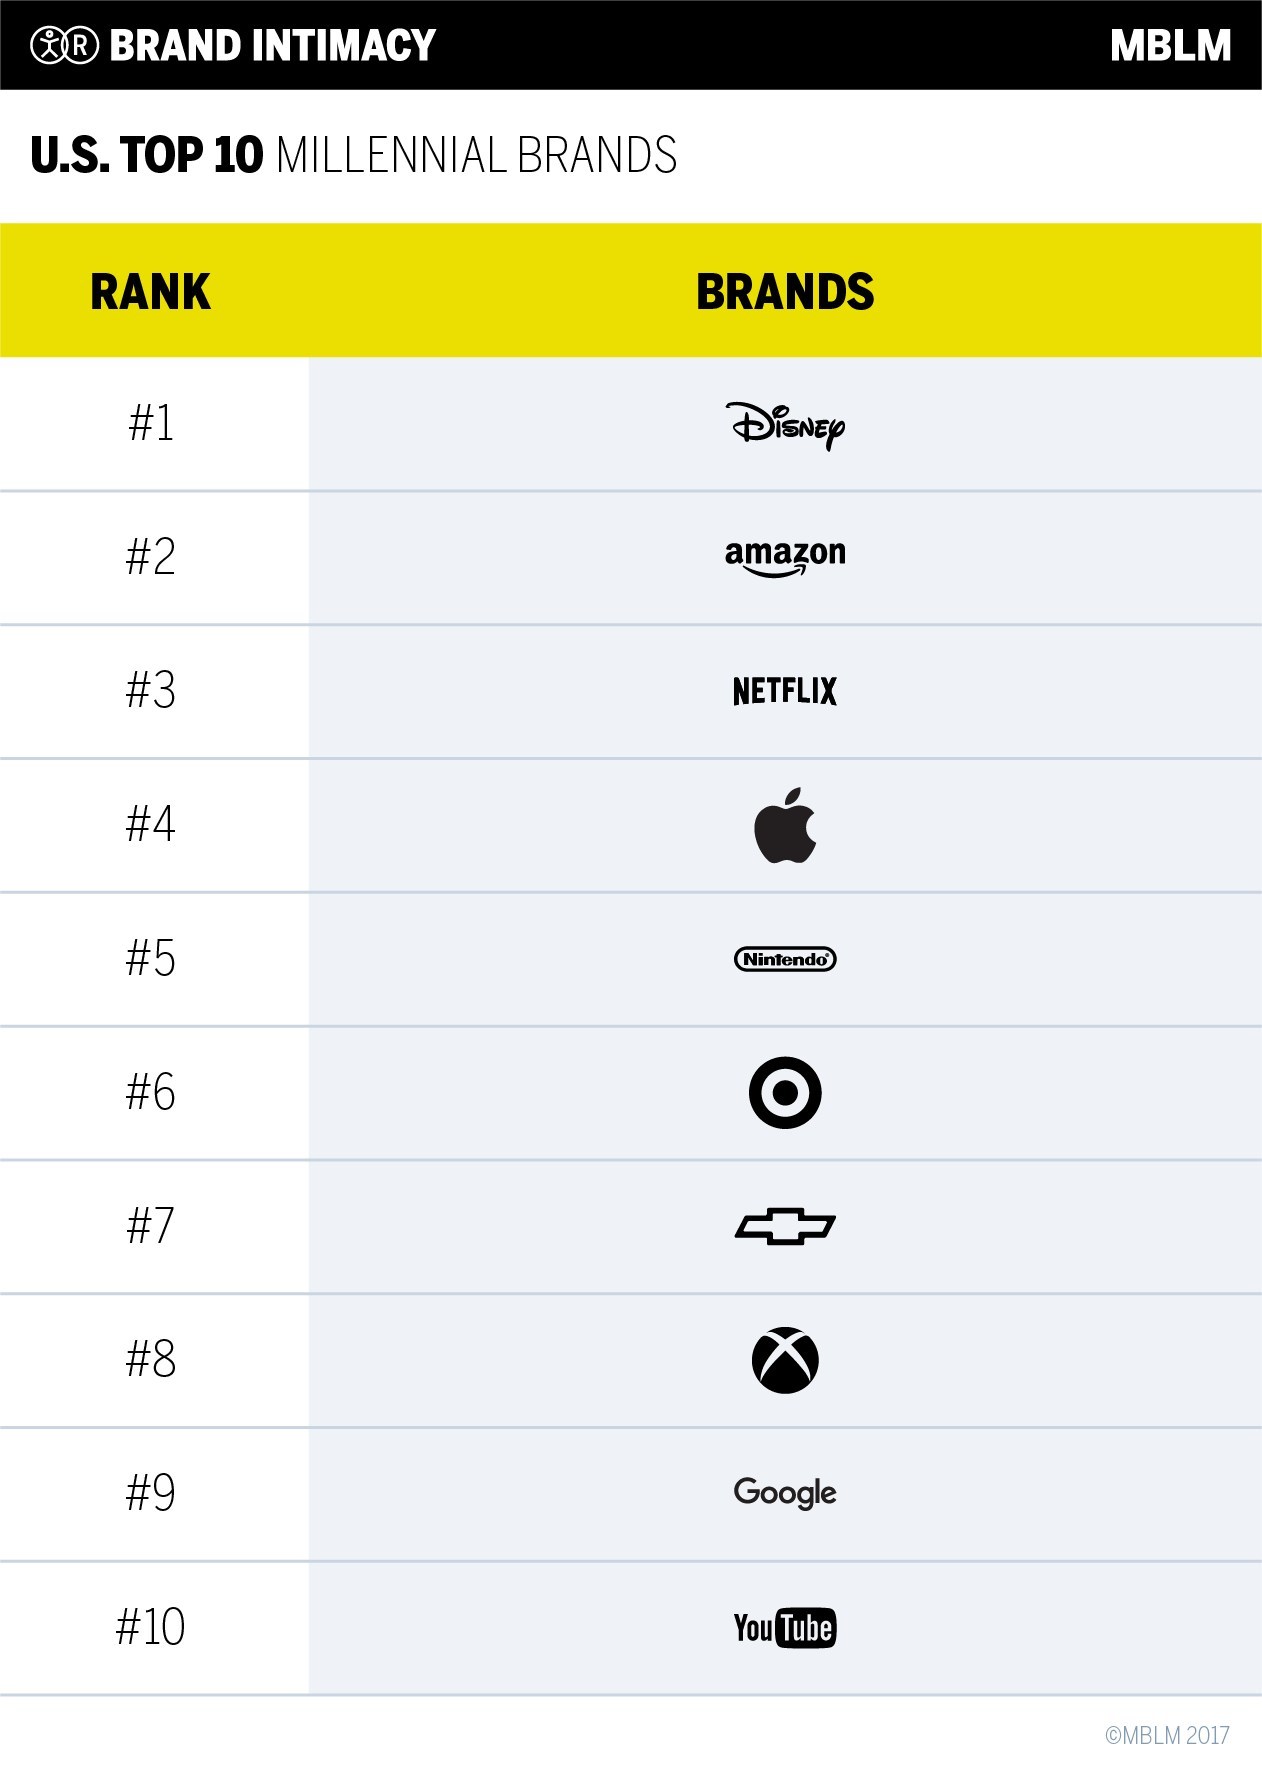 U.S. Top 10 Millennial Brands